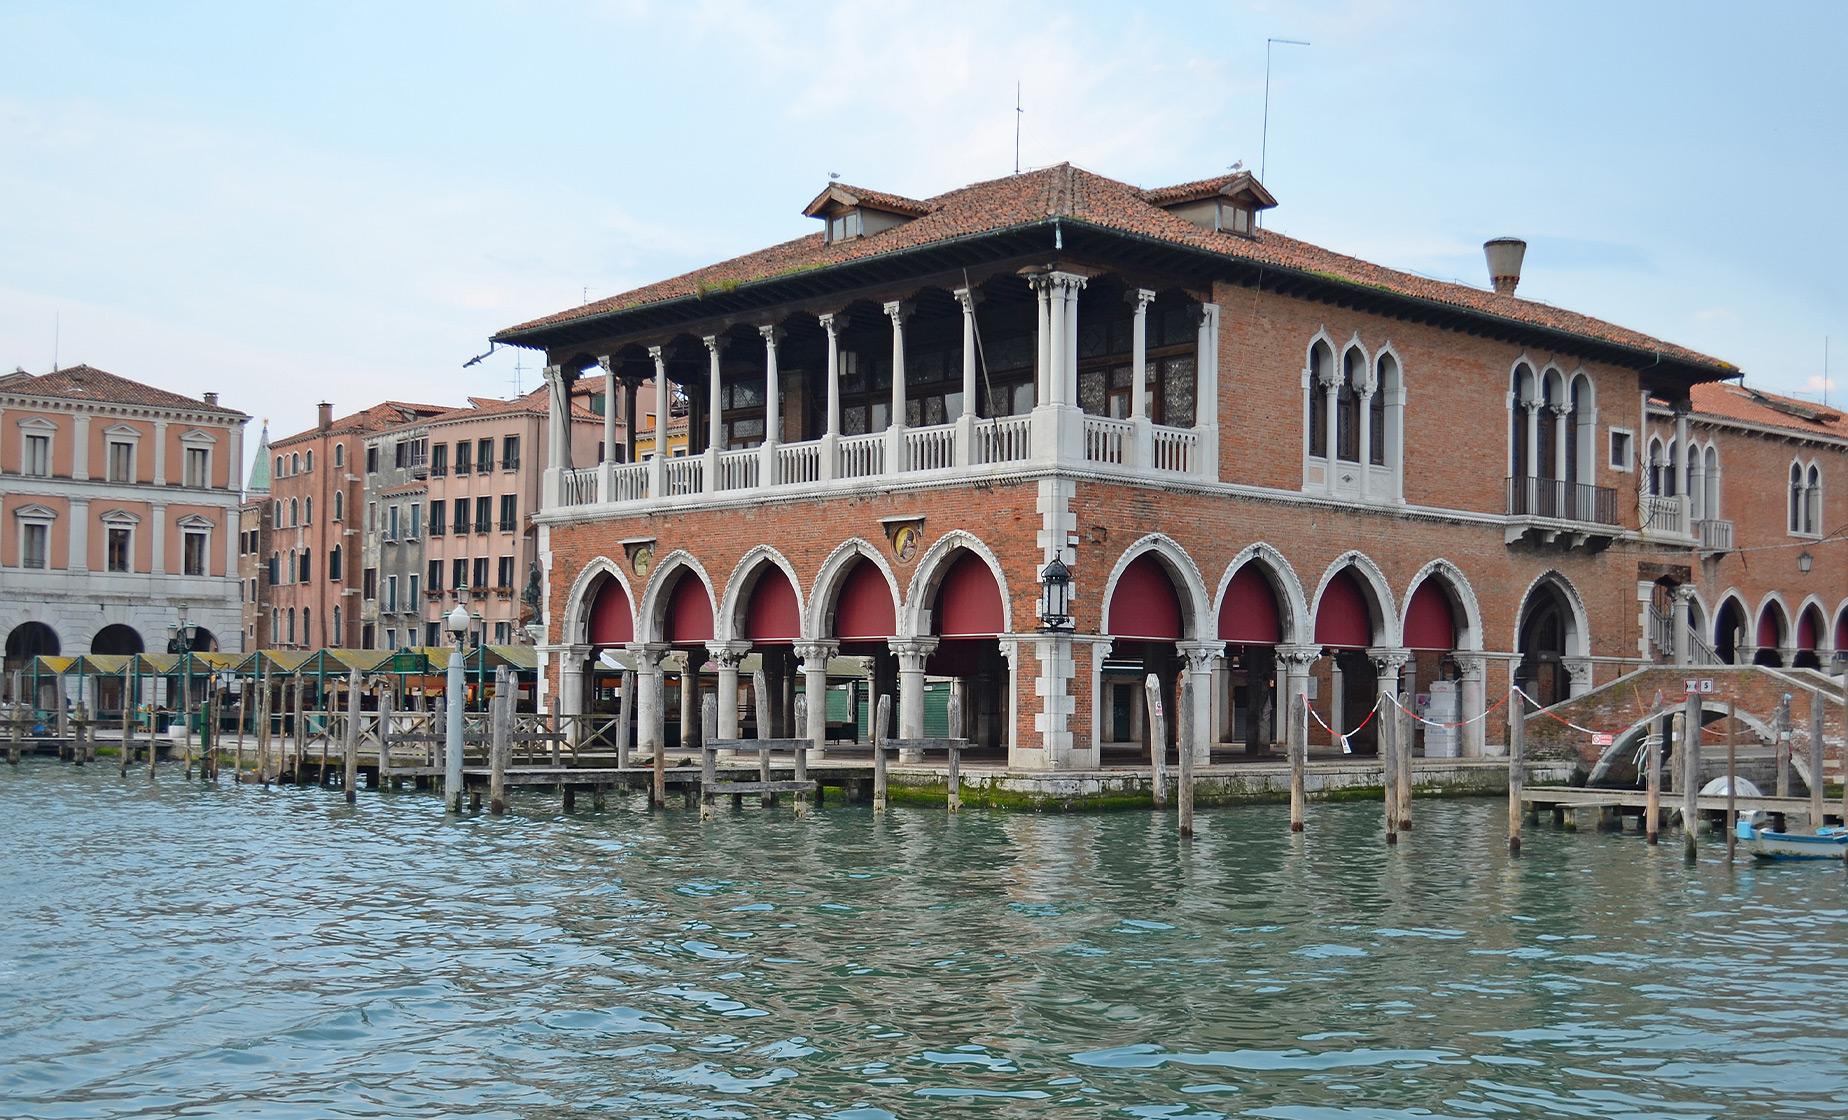 Rialto Market and Hidden Venice